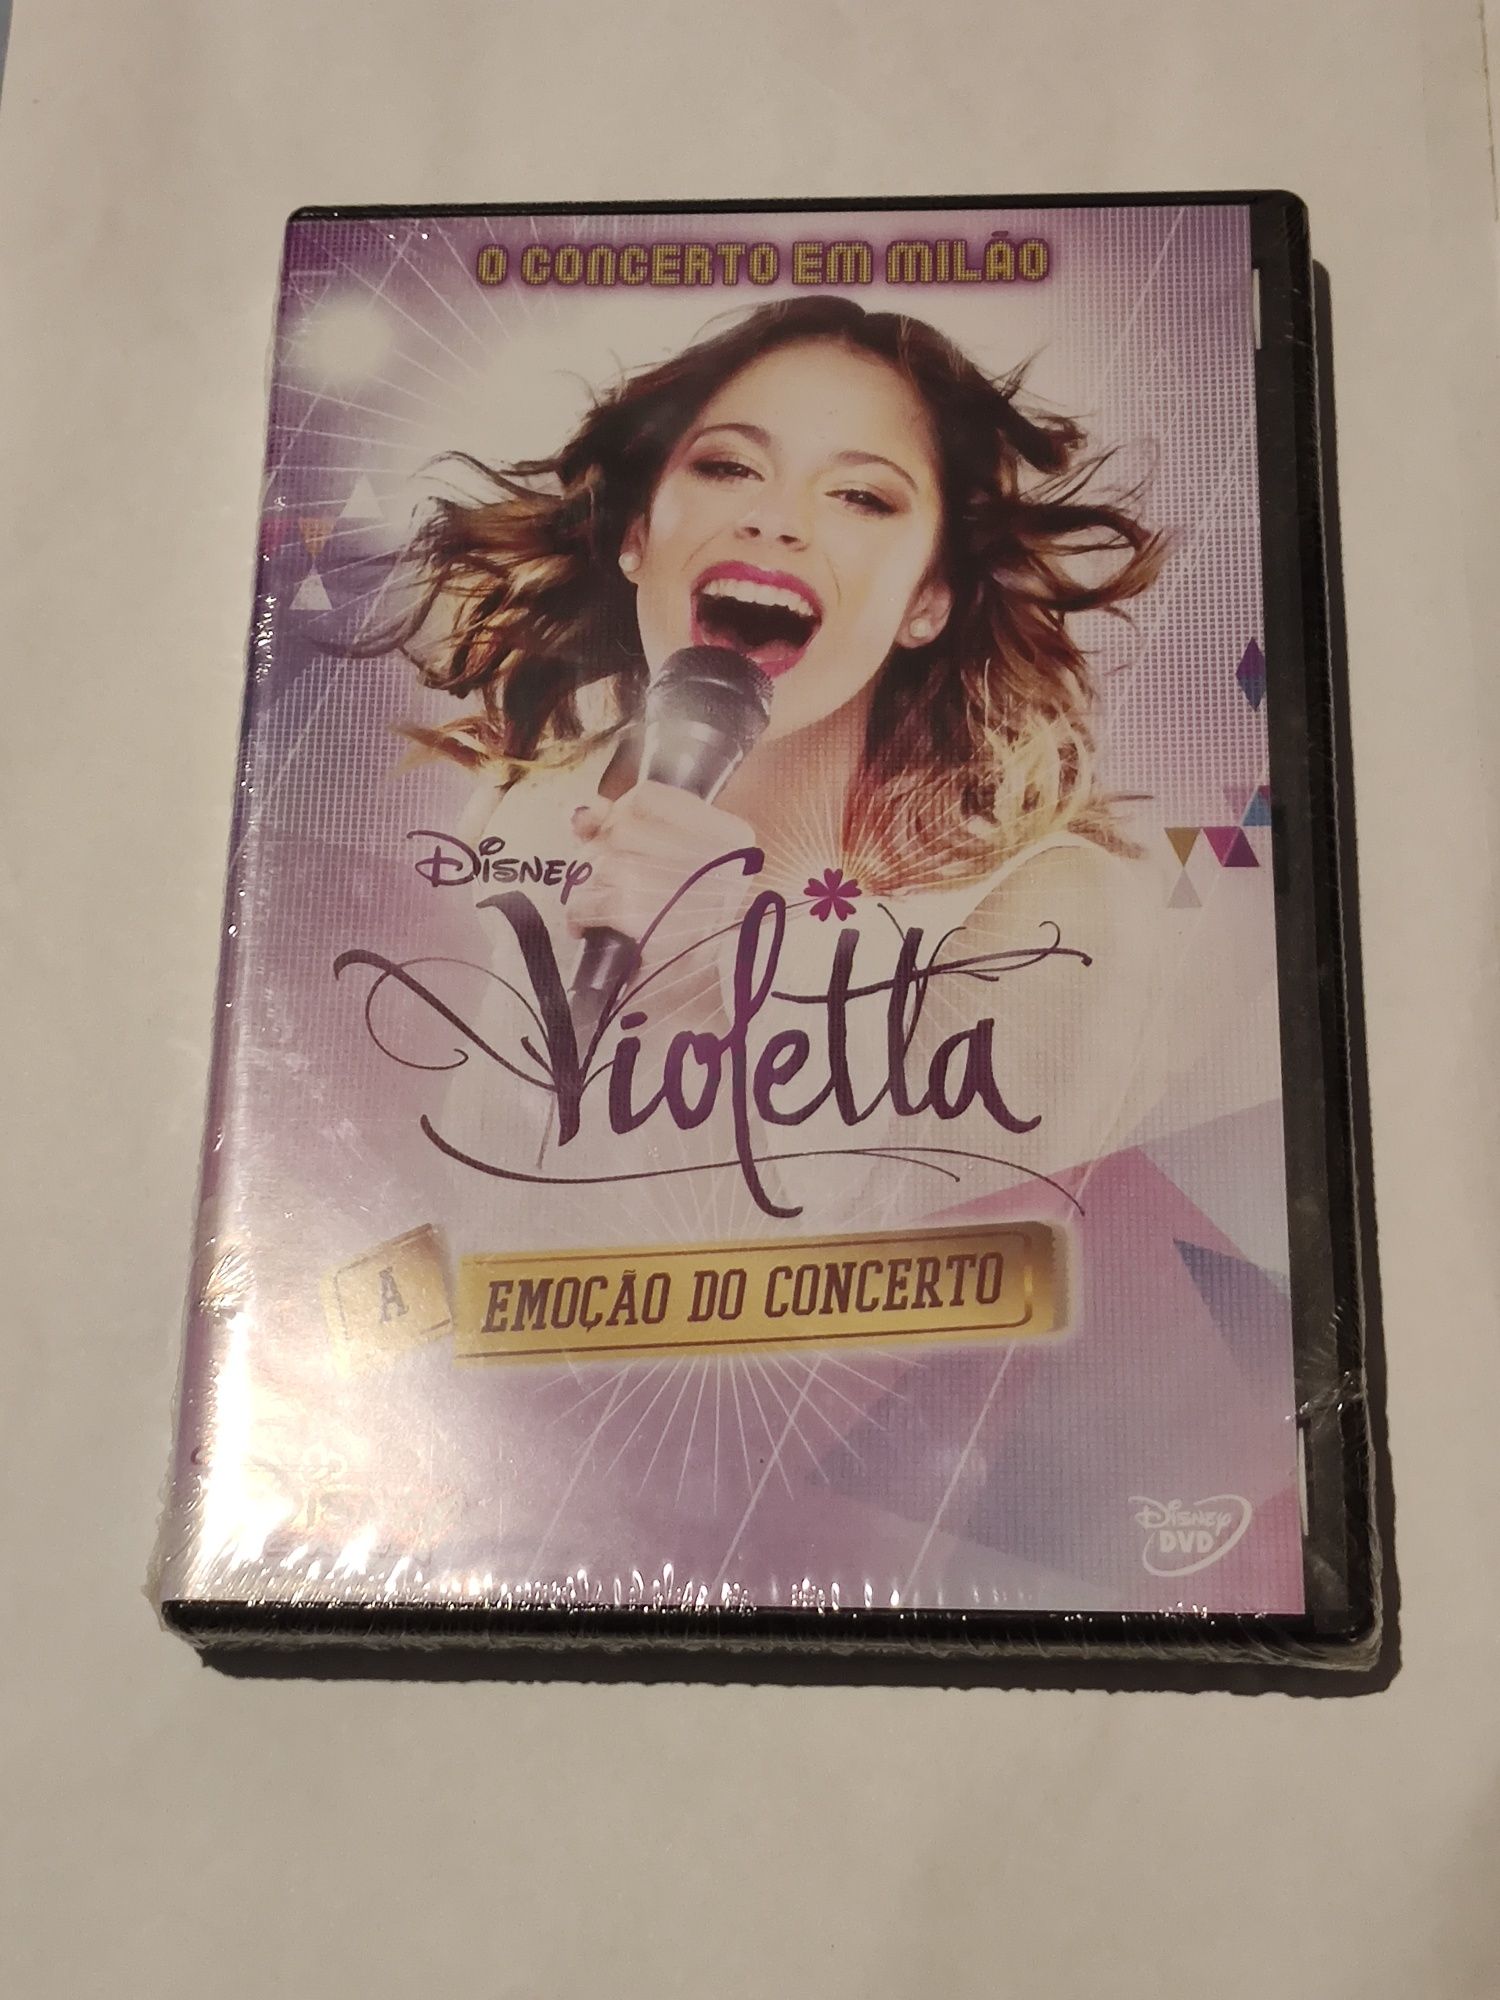 DVD do concerto da Violetta